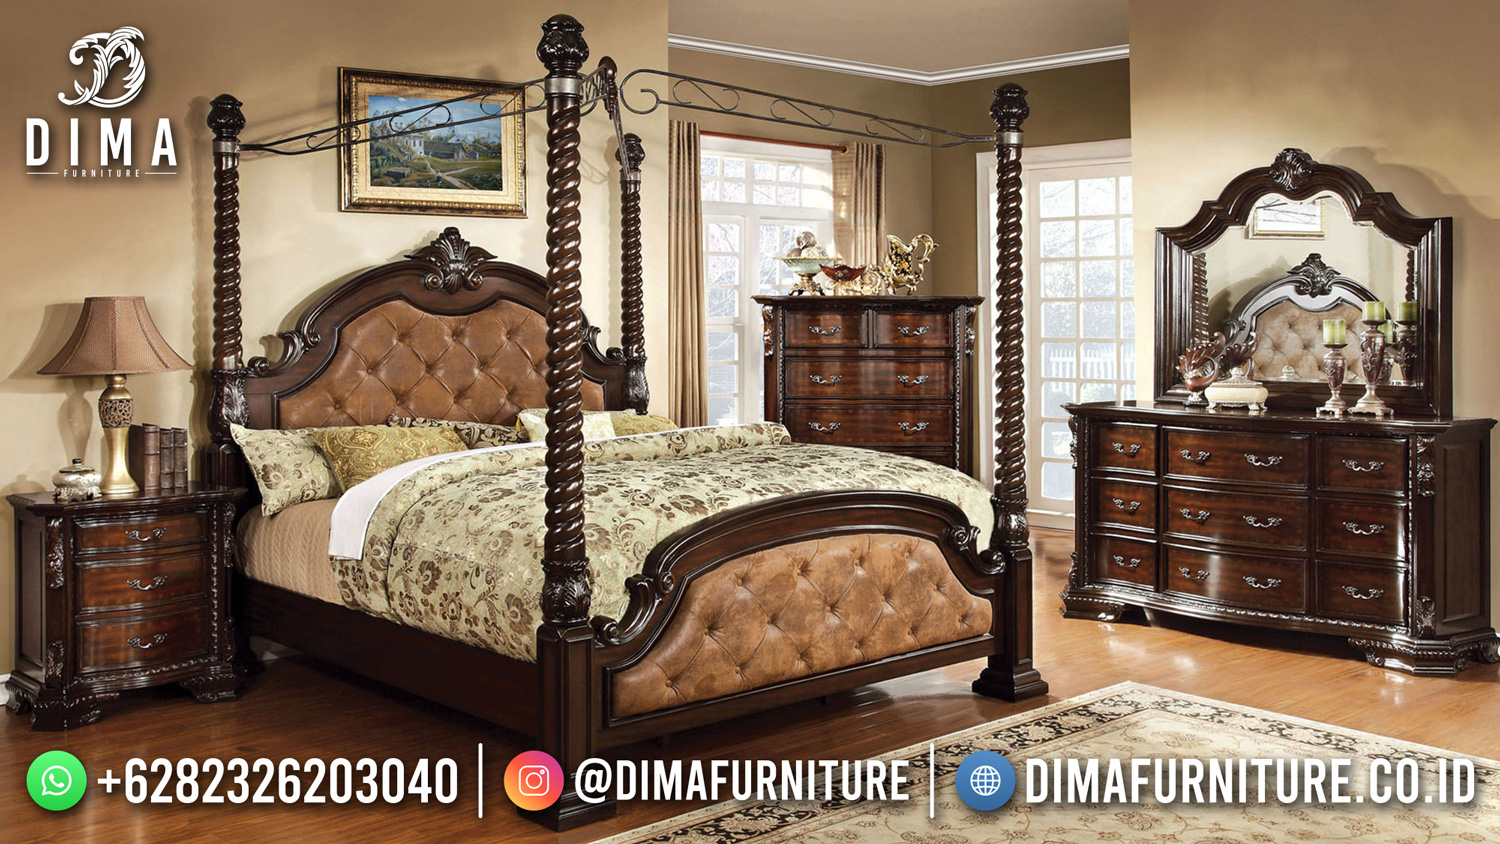 Jual Tempat Tidur Mewah Klasik Luxury Elegant Natural Color DF-1565